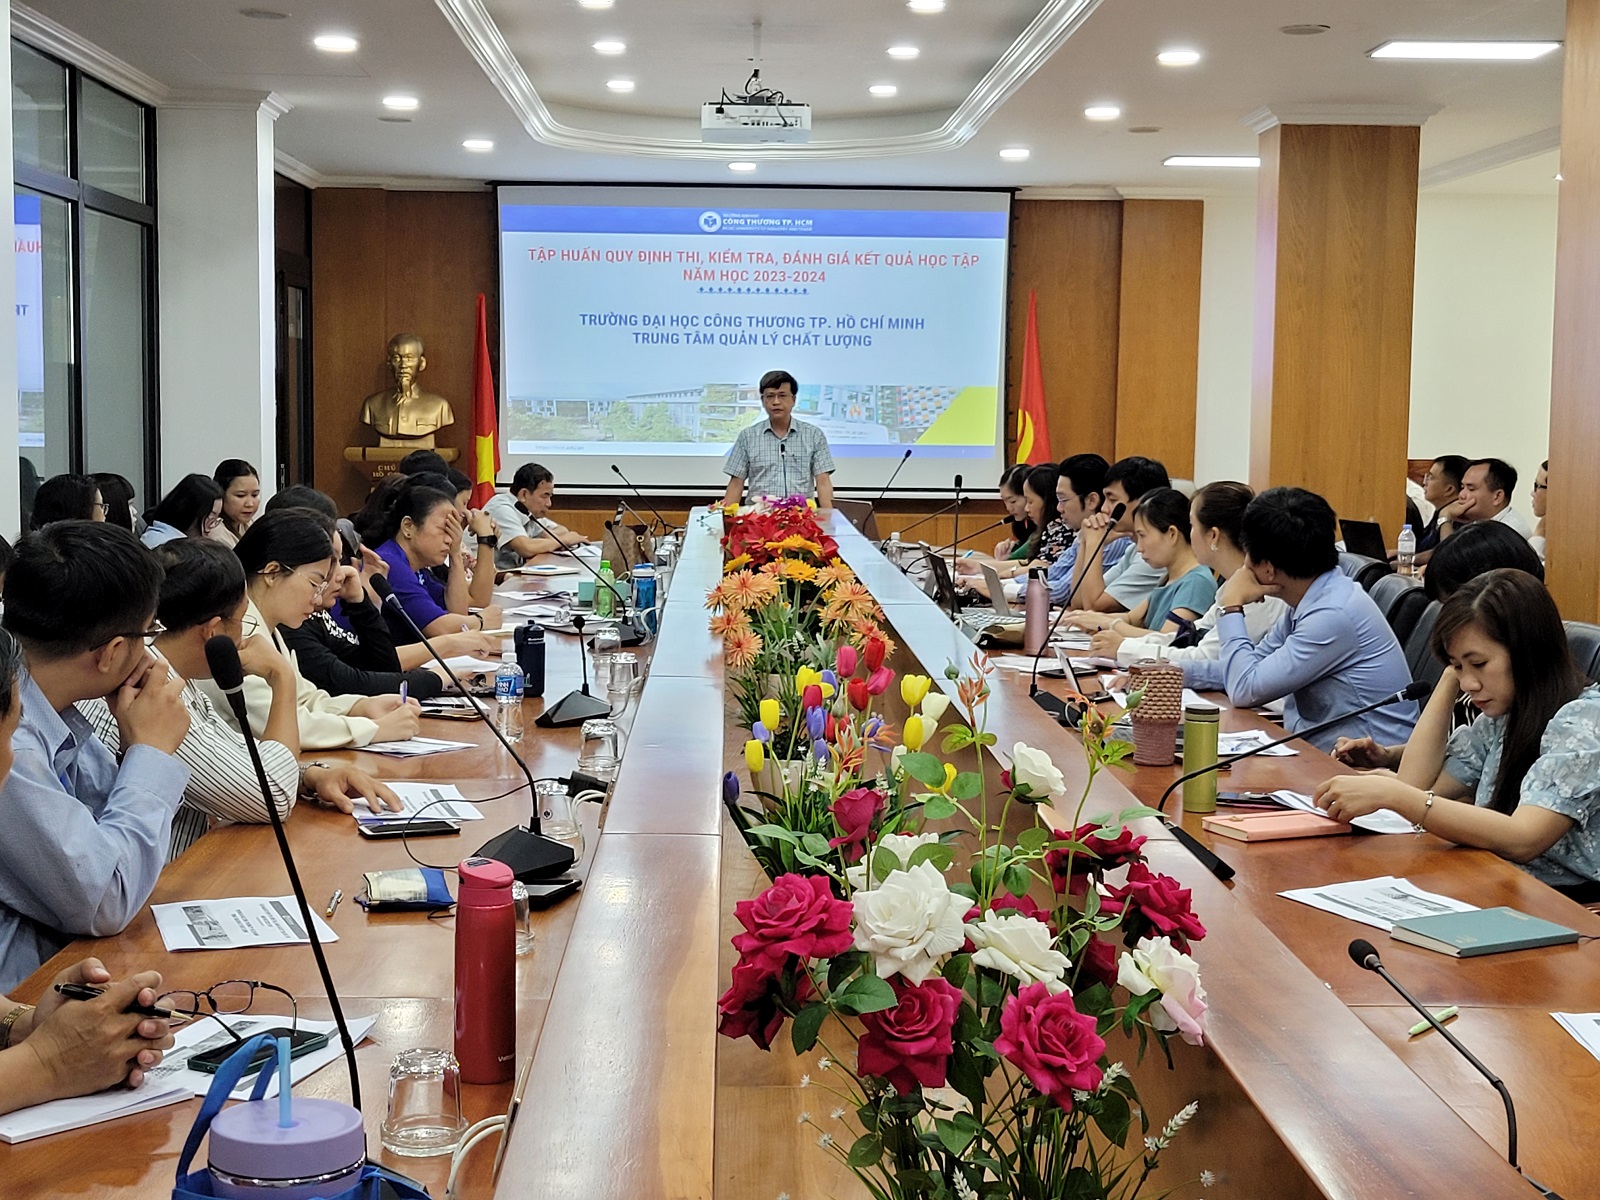 Tập huấn phổ biến Quy định về thi, kiểm tra và đánh giá kết quả học tập của Trường Đại học Công Thương TP. Hồ Chí Minh